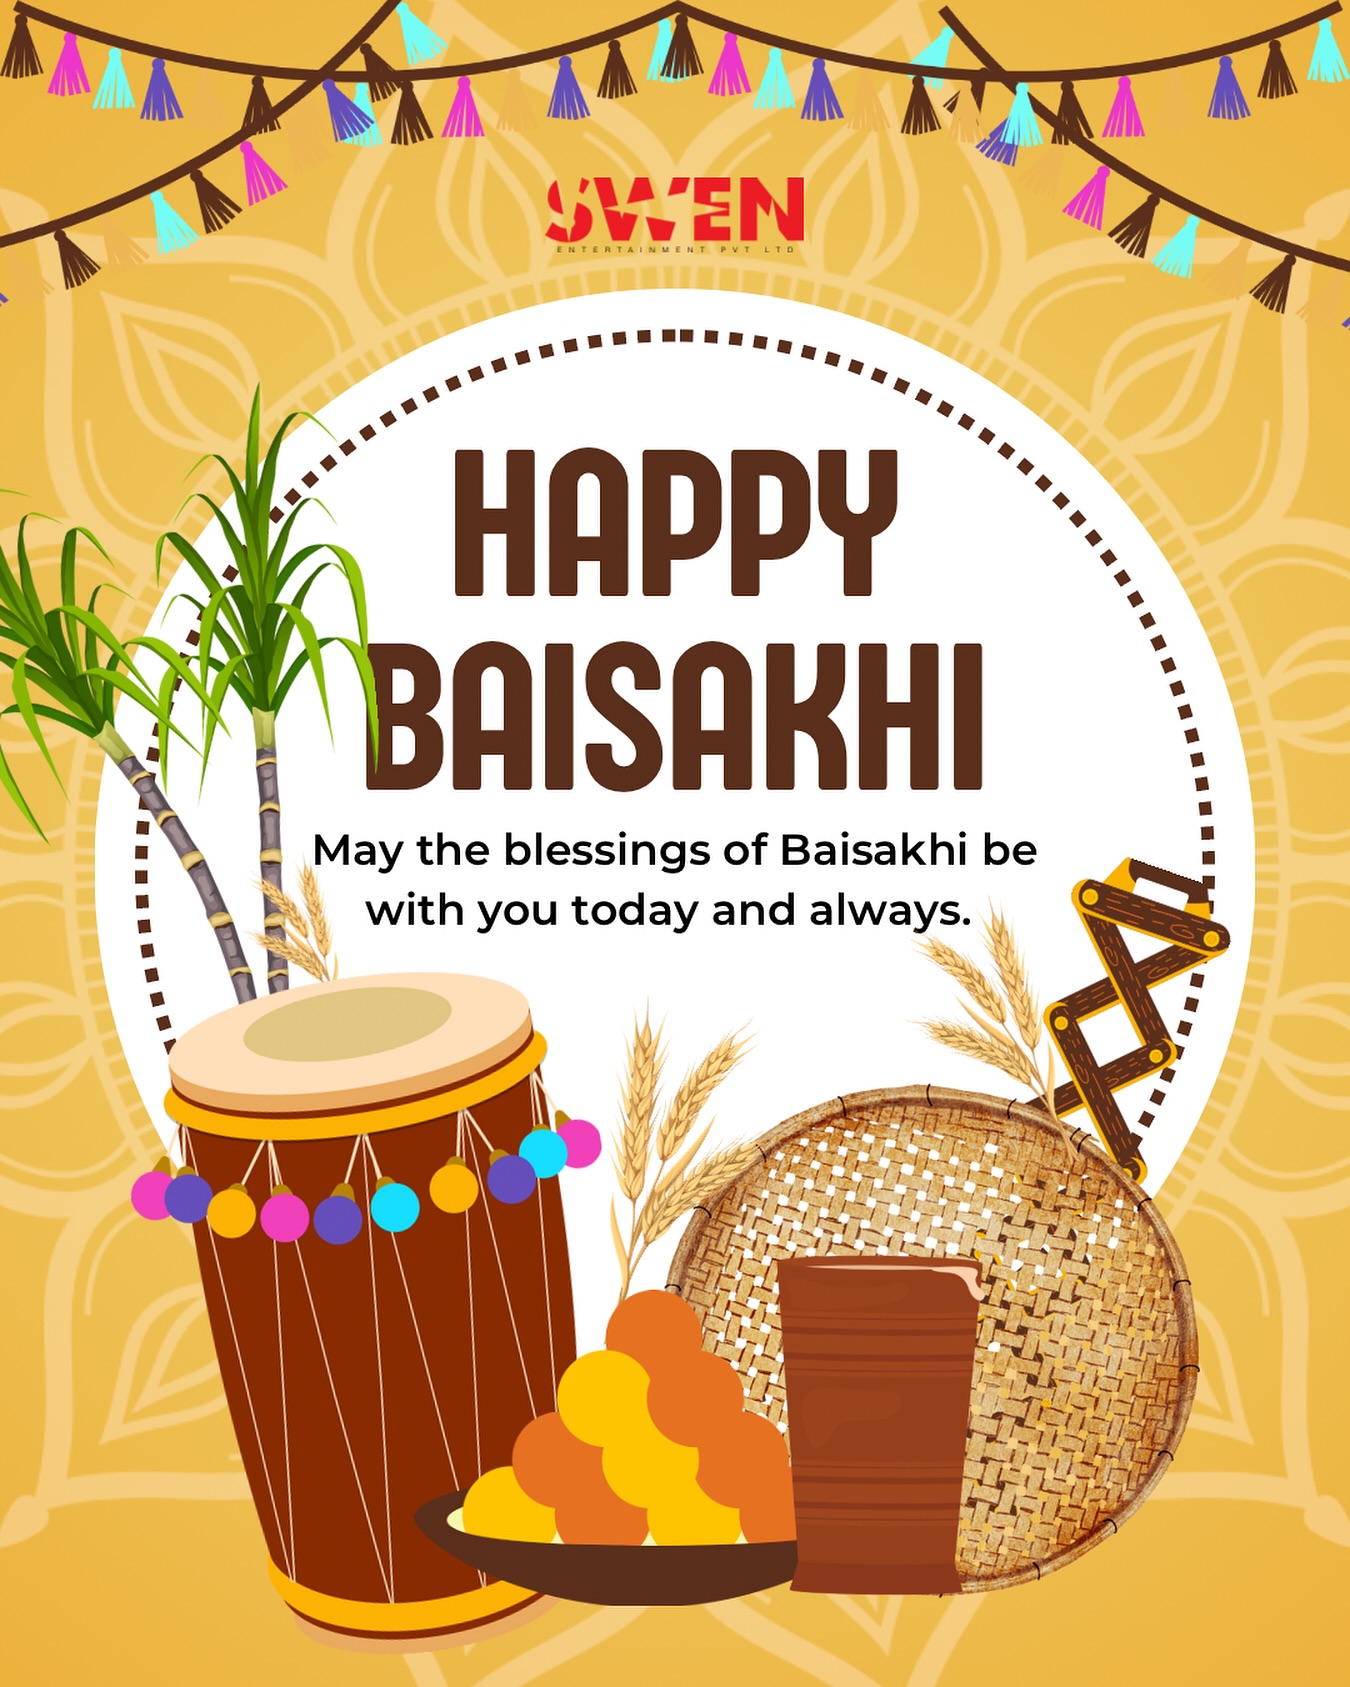 Wishing you a harvest of joy, prosperity, and endless blessings on this Baisakhi! 🌾 May your life be as colorful and joyful as the festival ✨

Follow @swenentertainment for more! ❤️

___

#baisakhi #baisa #india #baisaraj #vaisakhi #happybaisakhi #ugadi #punjab #festival #rajputana #punjabi #holi #sikhism #collection #baisakhifestival #punjabifestival #indianculture #viral #trendjng #staysafe #harvest #harvesttime #culture #farming #swenentertainment